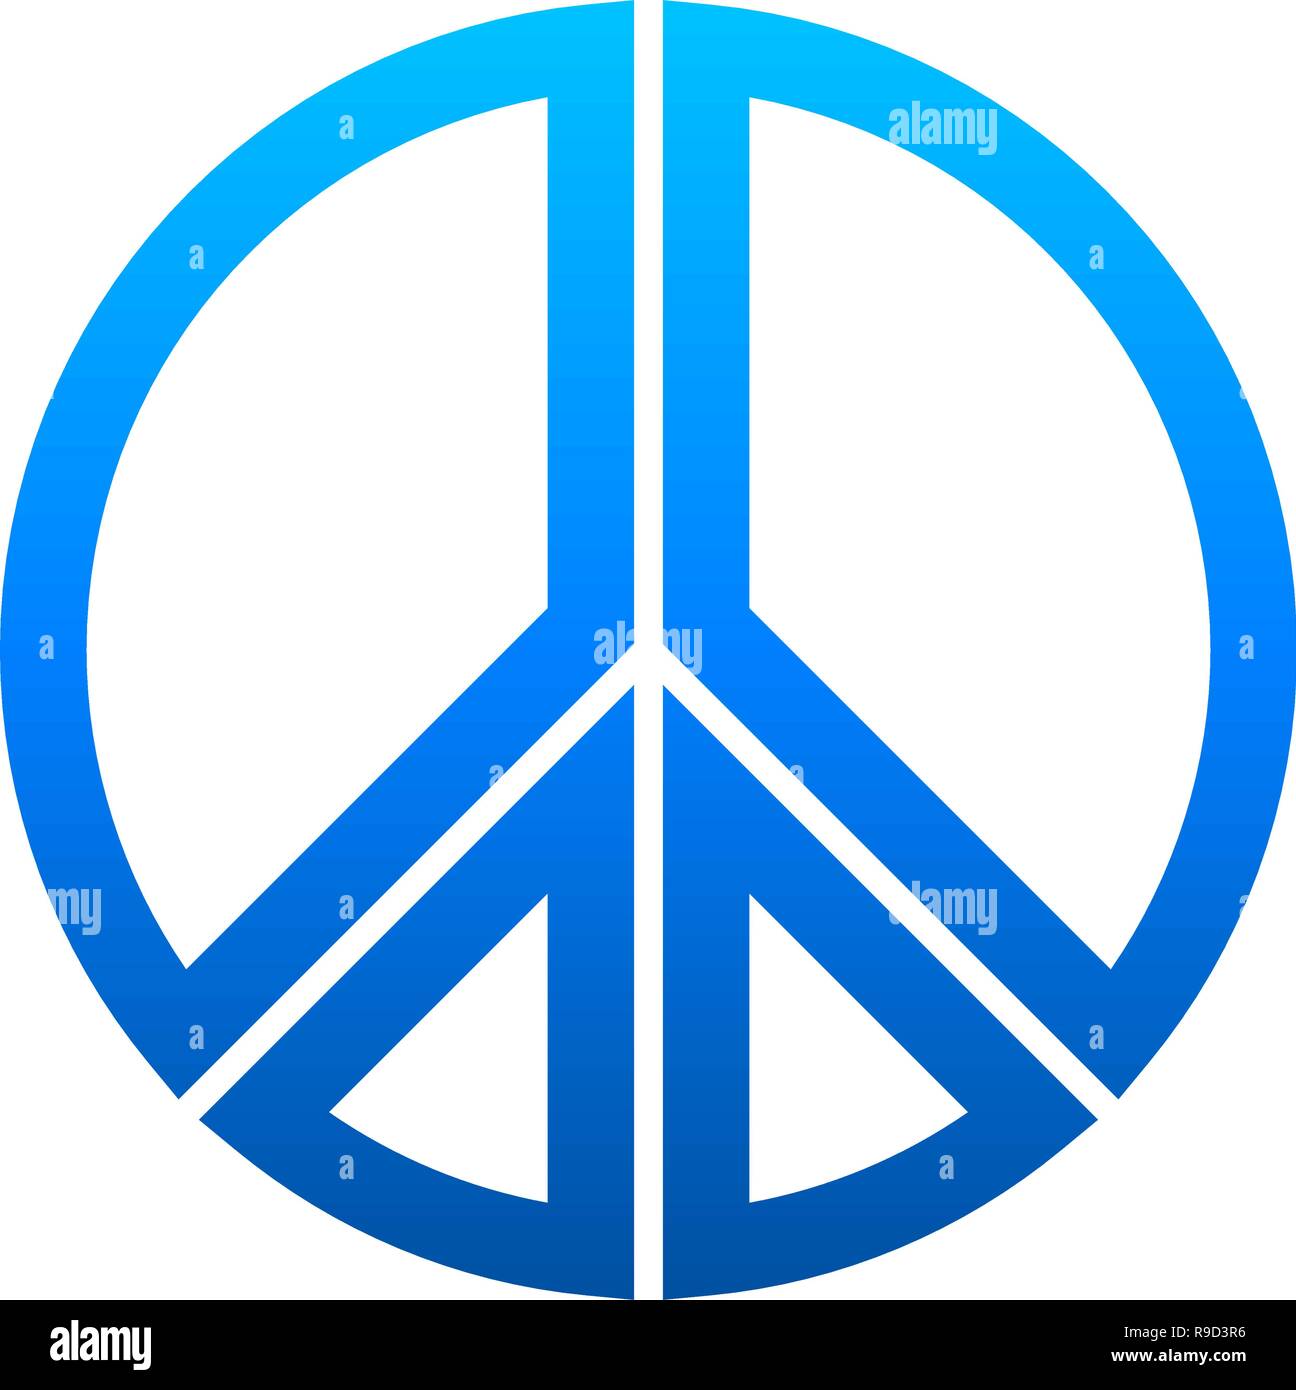 Simbolo di pace icona - blu gradiente semplice, segmentato di forme con contorni, isolato - illustrazione vettoriale Illustrazione Vettoriale